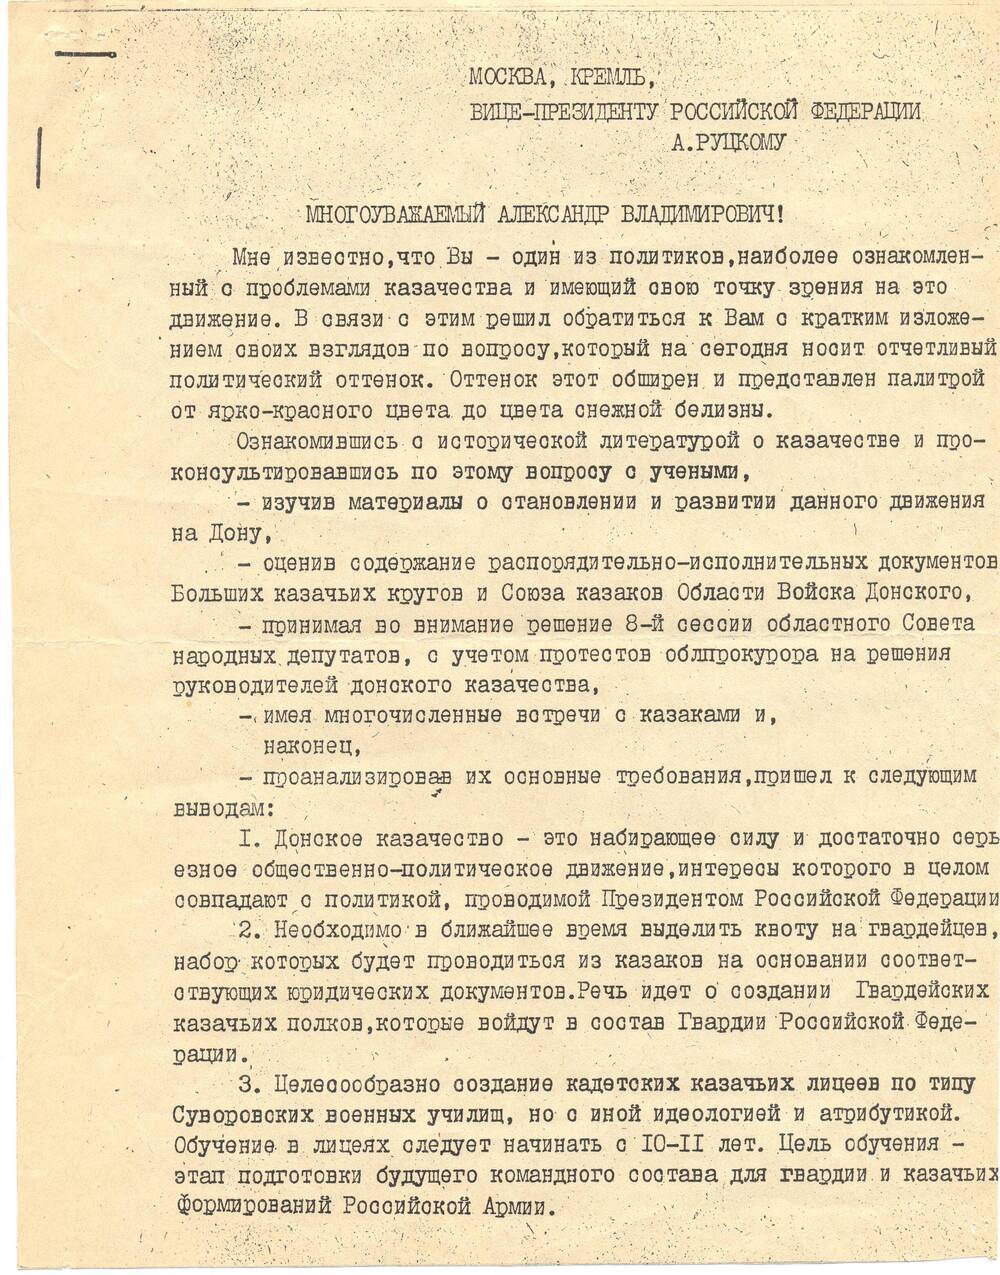 Письмо Руцкому А. от атамана ОВД о формировании казачьих войск.